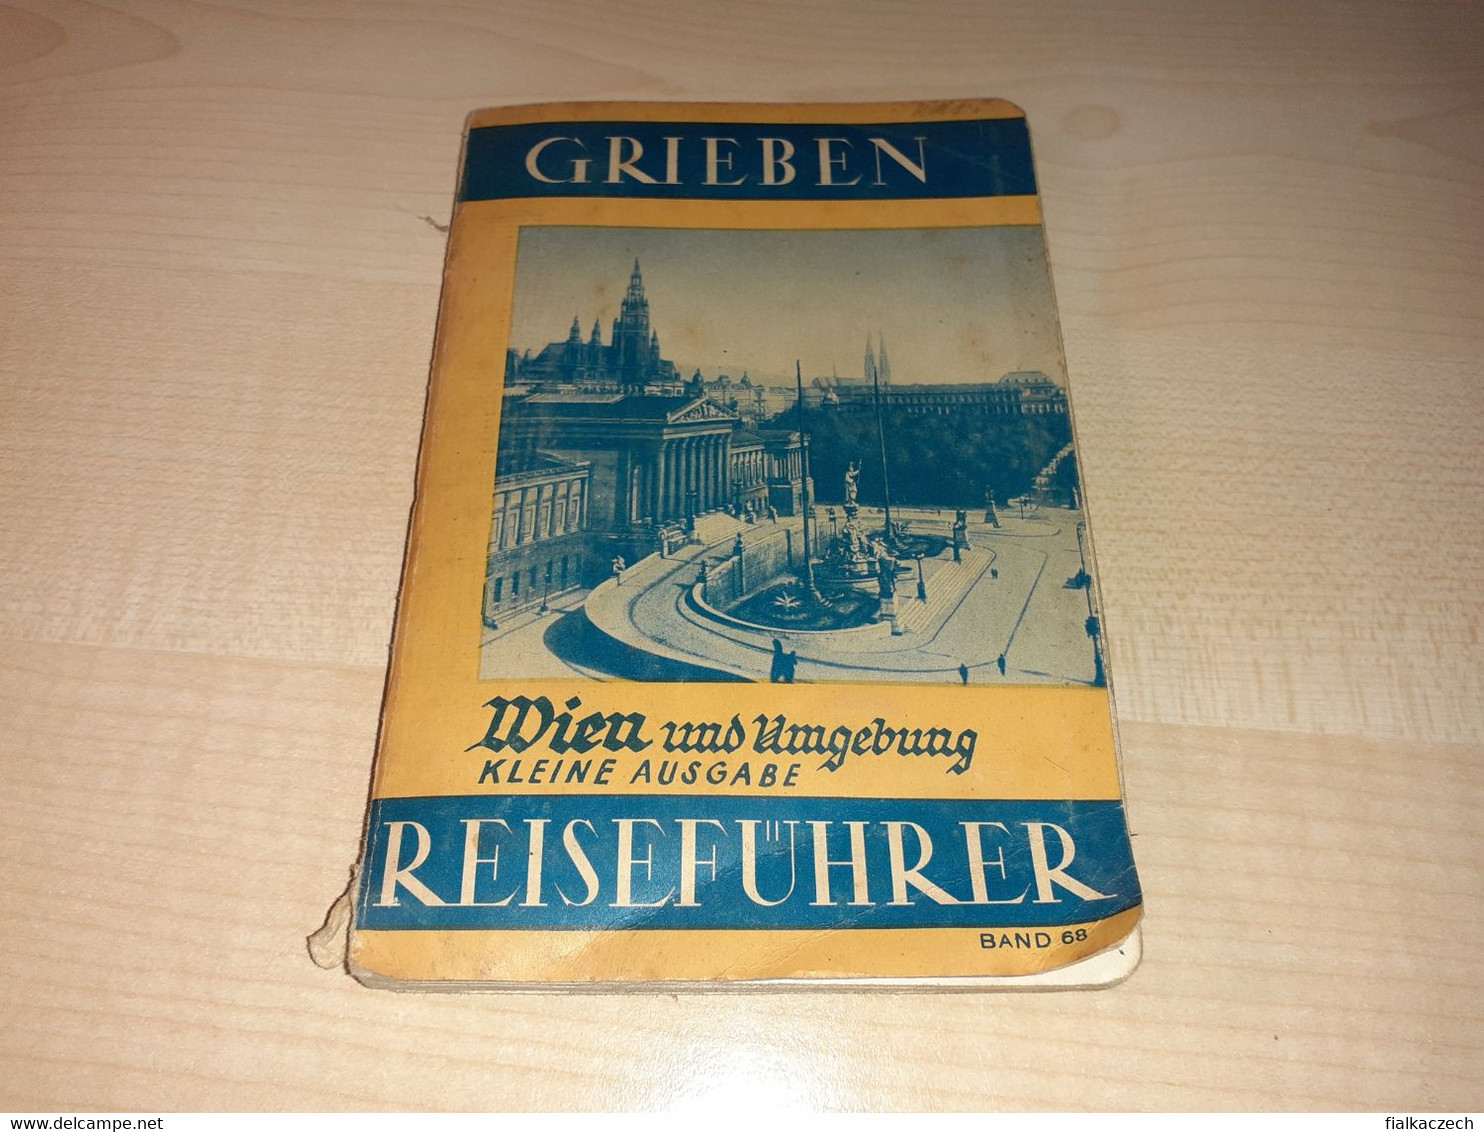 Grieben 1937, Wien Und Umgebung Kleine Ausgabe Reiseführer, Austria Tourist Guide, Tour Guide With Map, Karte - Austria